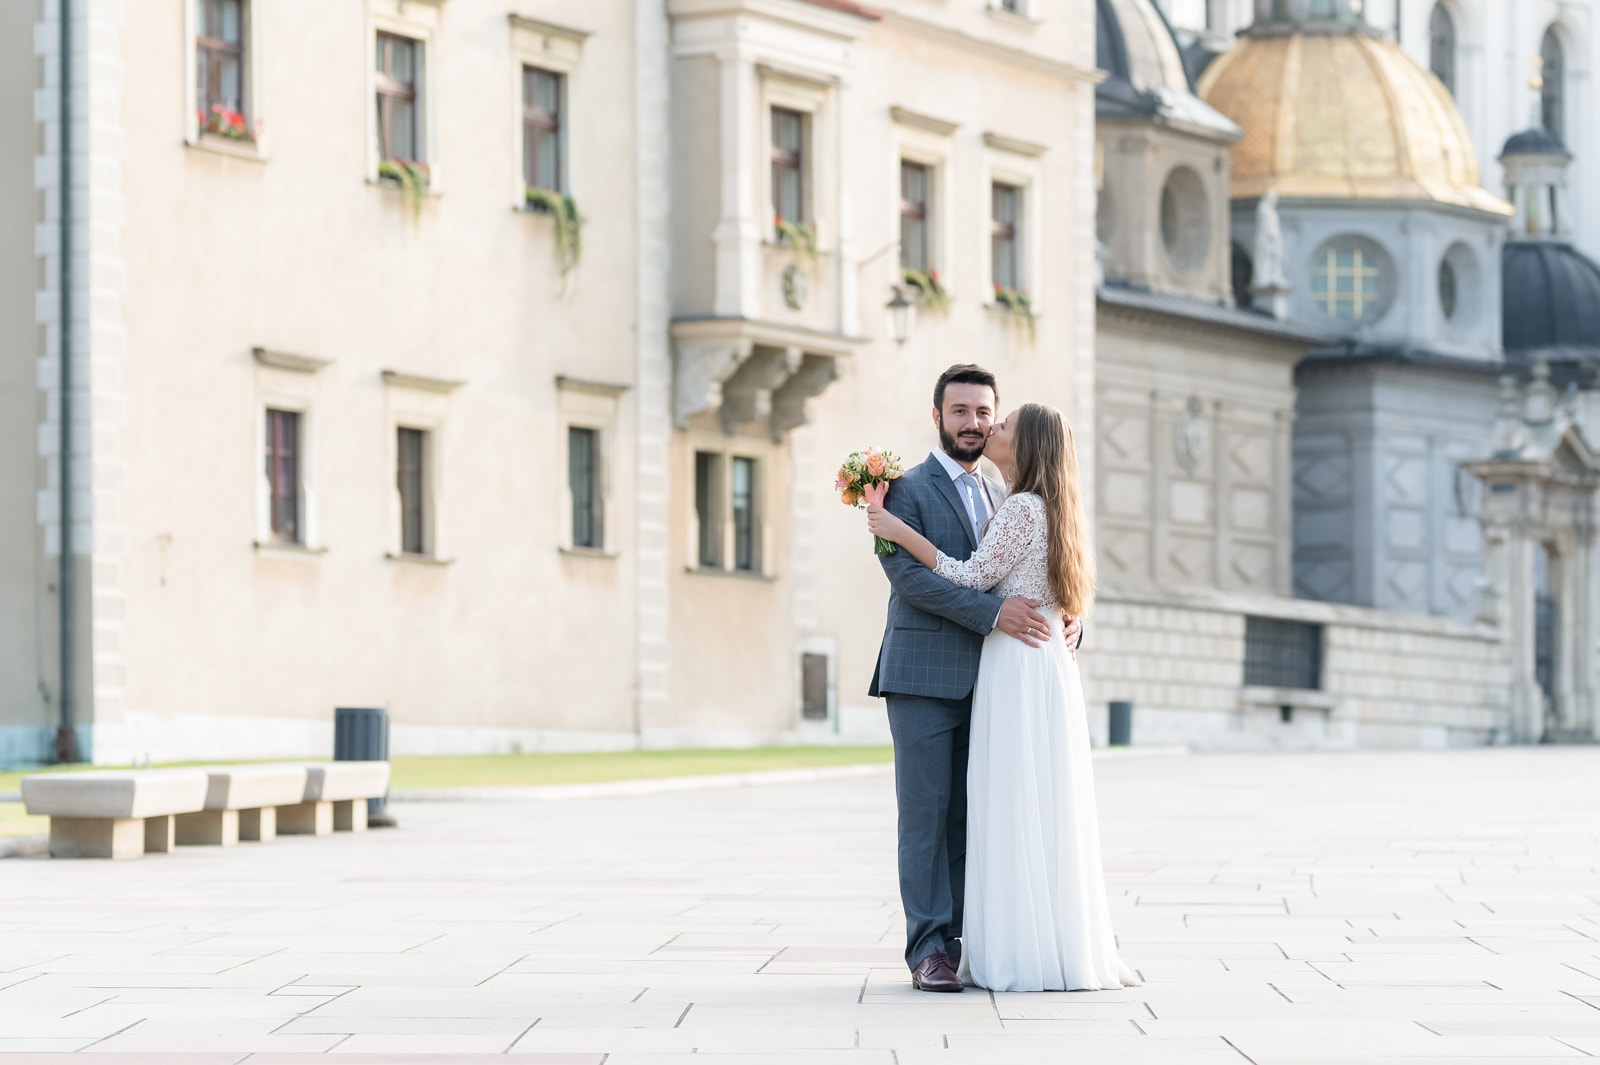 Plener ślubny w Krakowie, zdjęcie na Wawelu Gosia & Güner